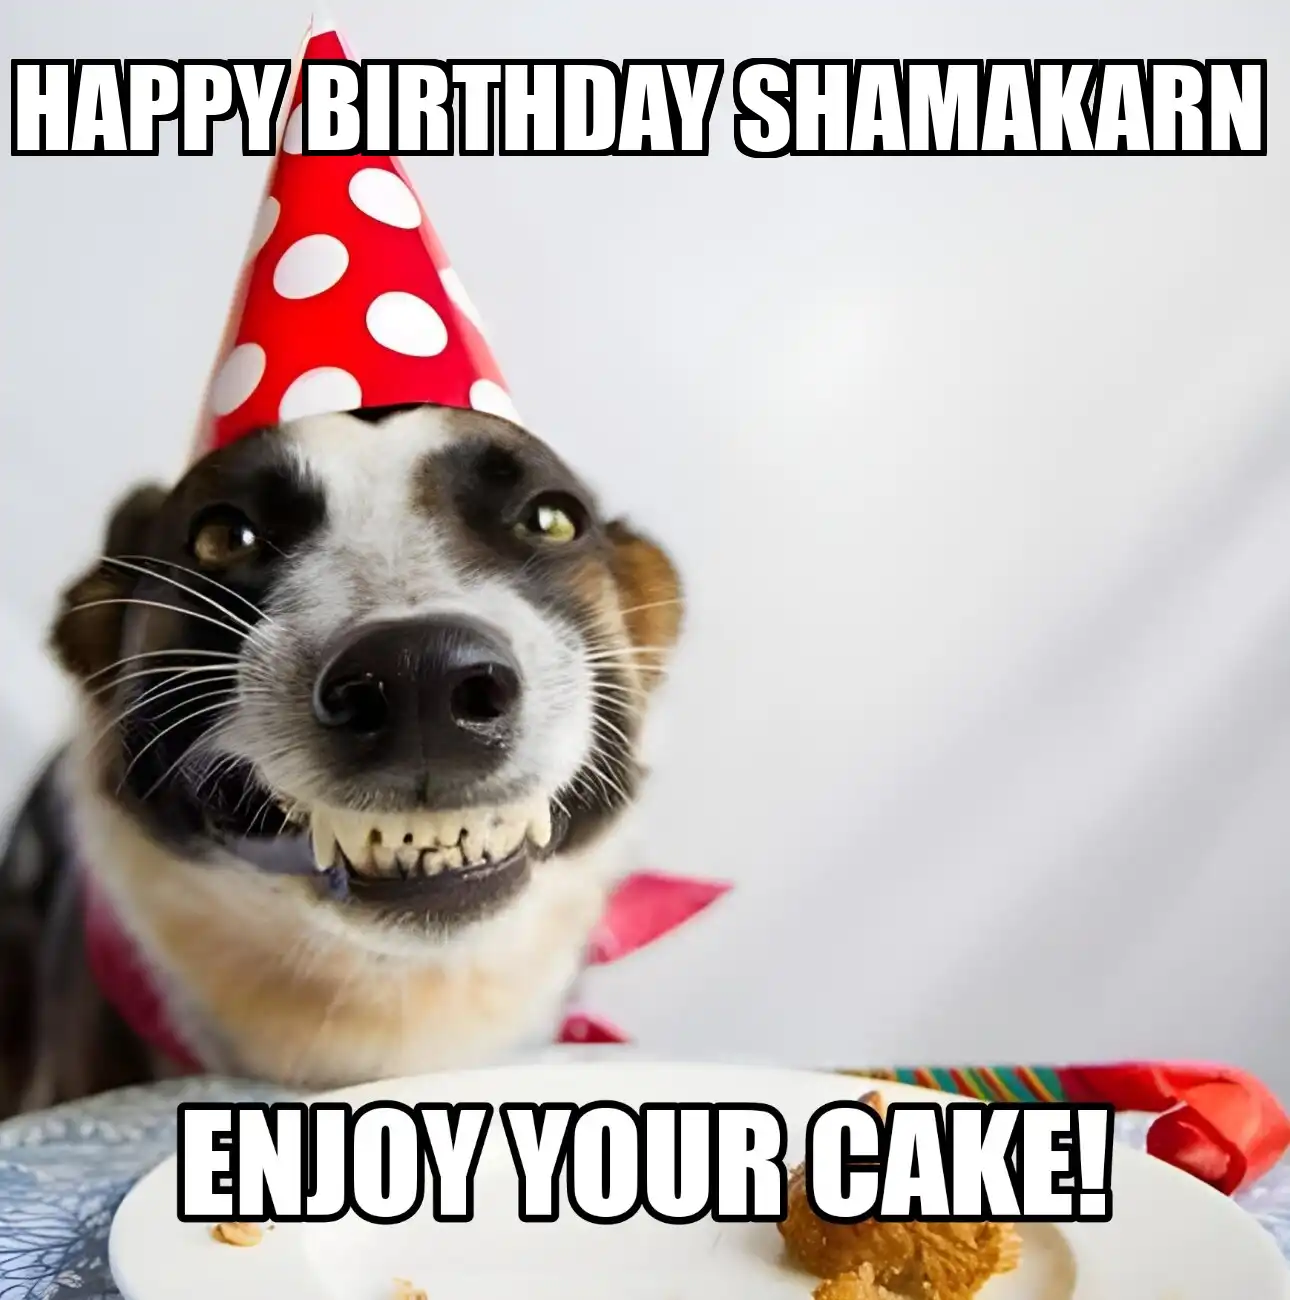 Happy Birthday Shamakarn Enjoy Your Cake Dog Meme